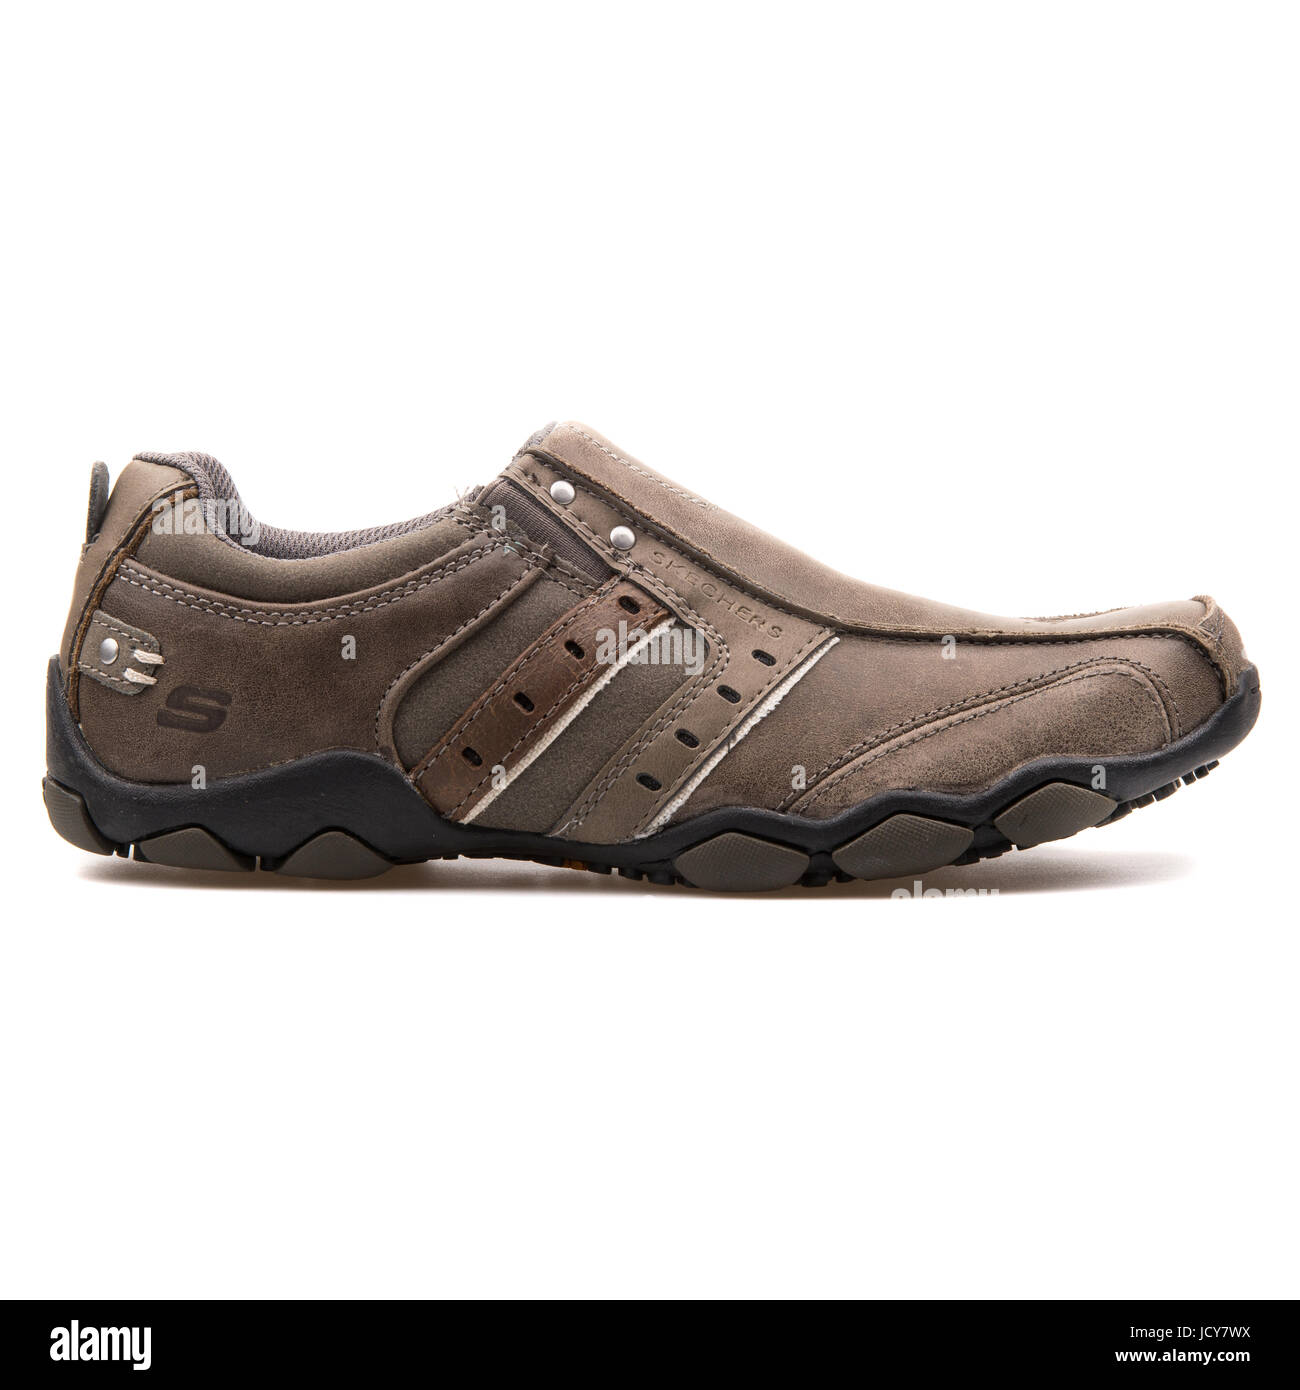 Diámetro Skechers Charcoal hombres de cuero zapatos deportivos - Fotografía de stock - Alamy